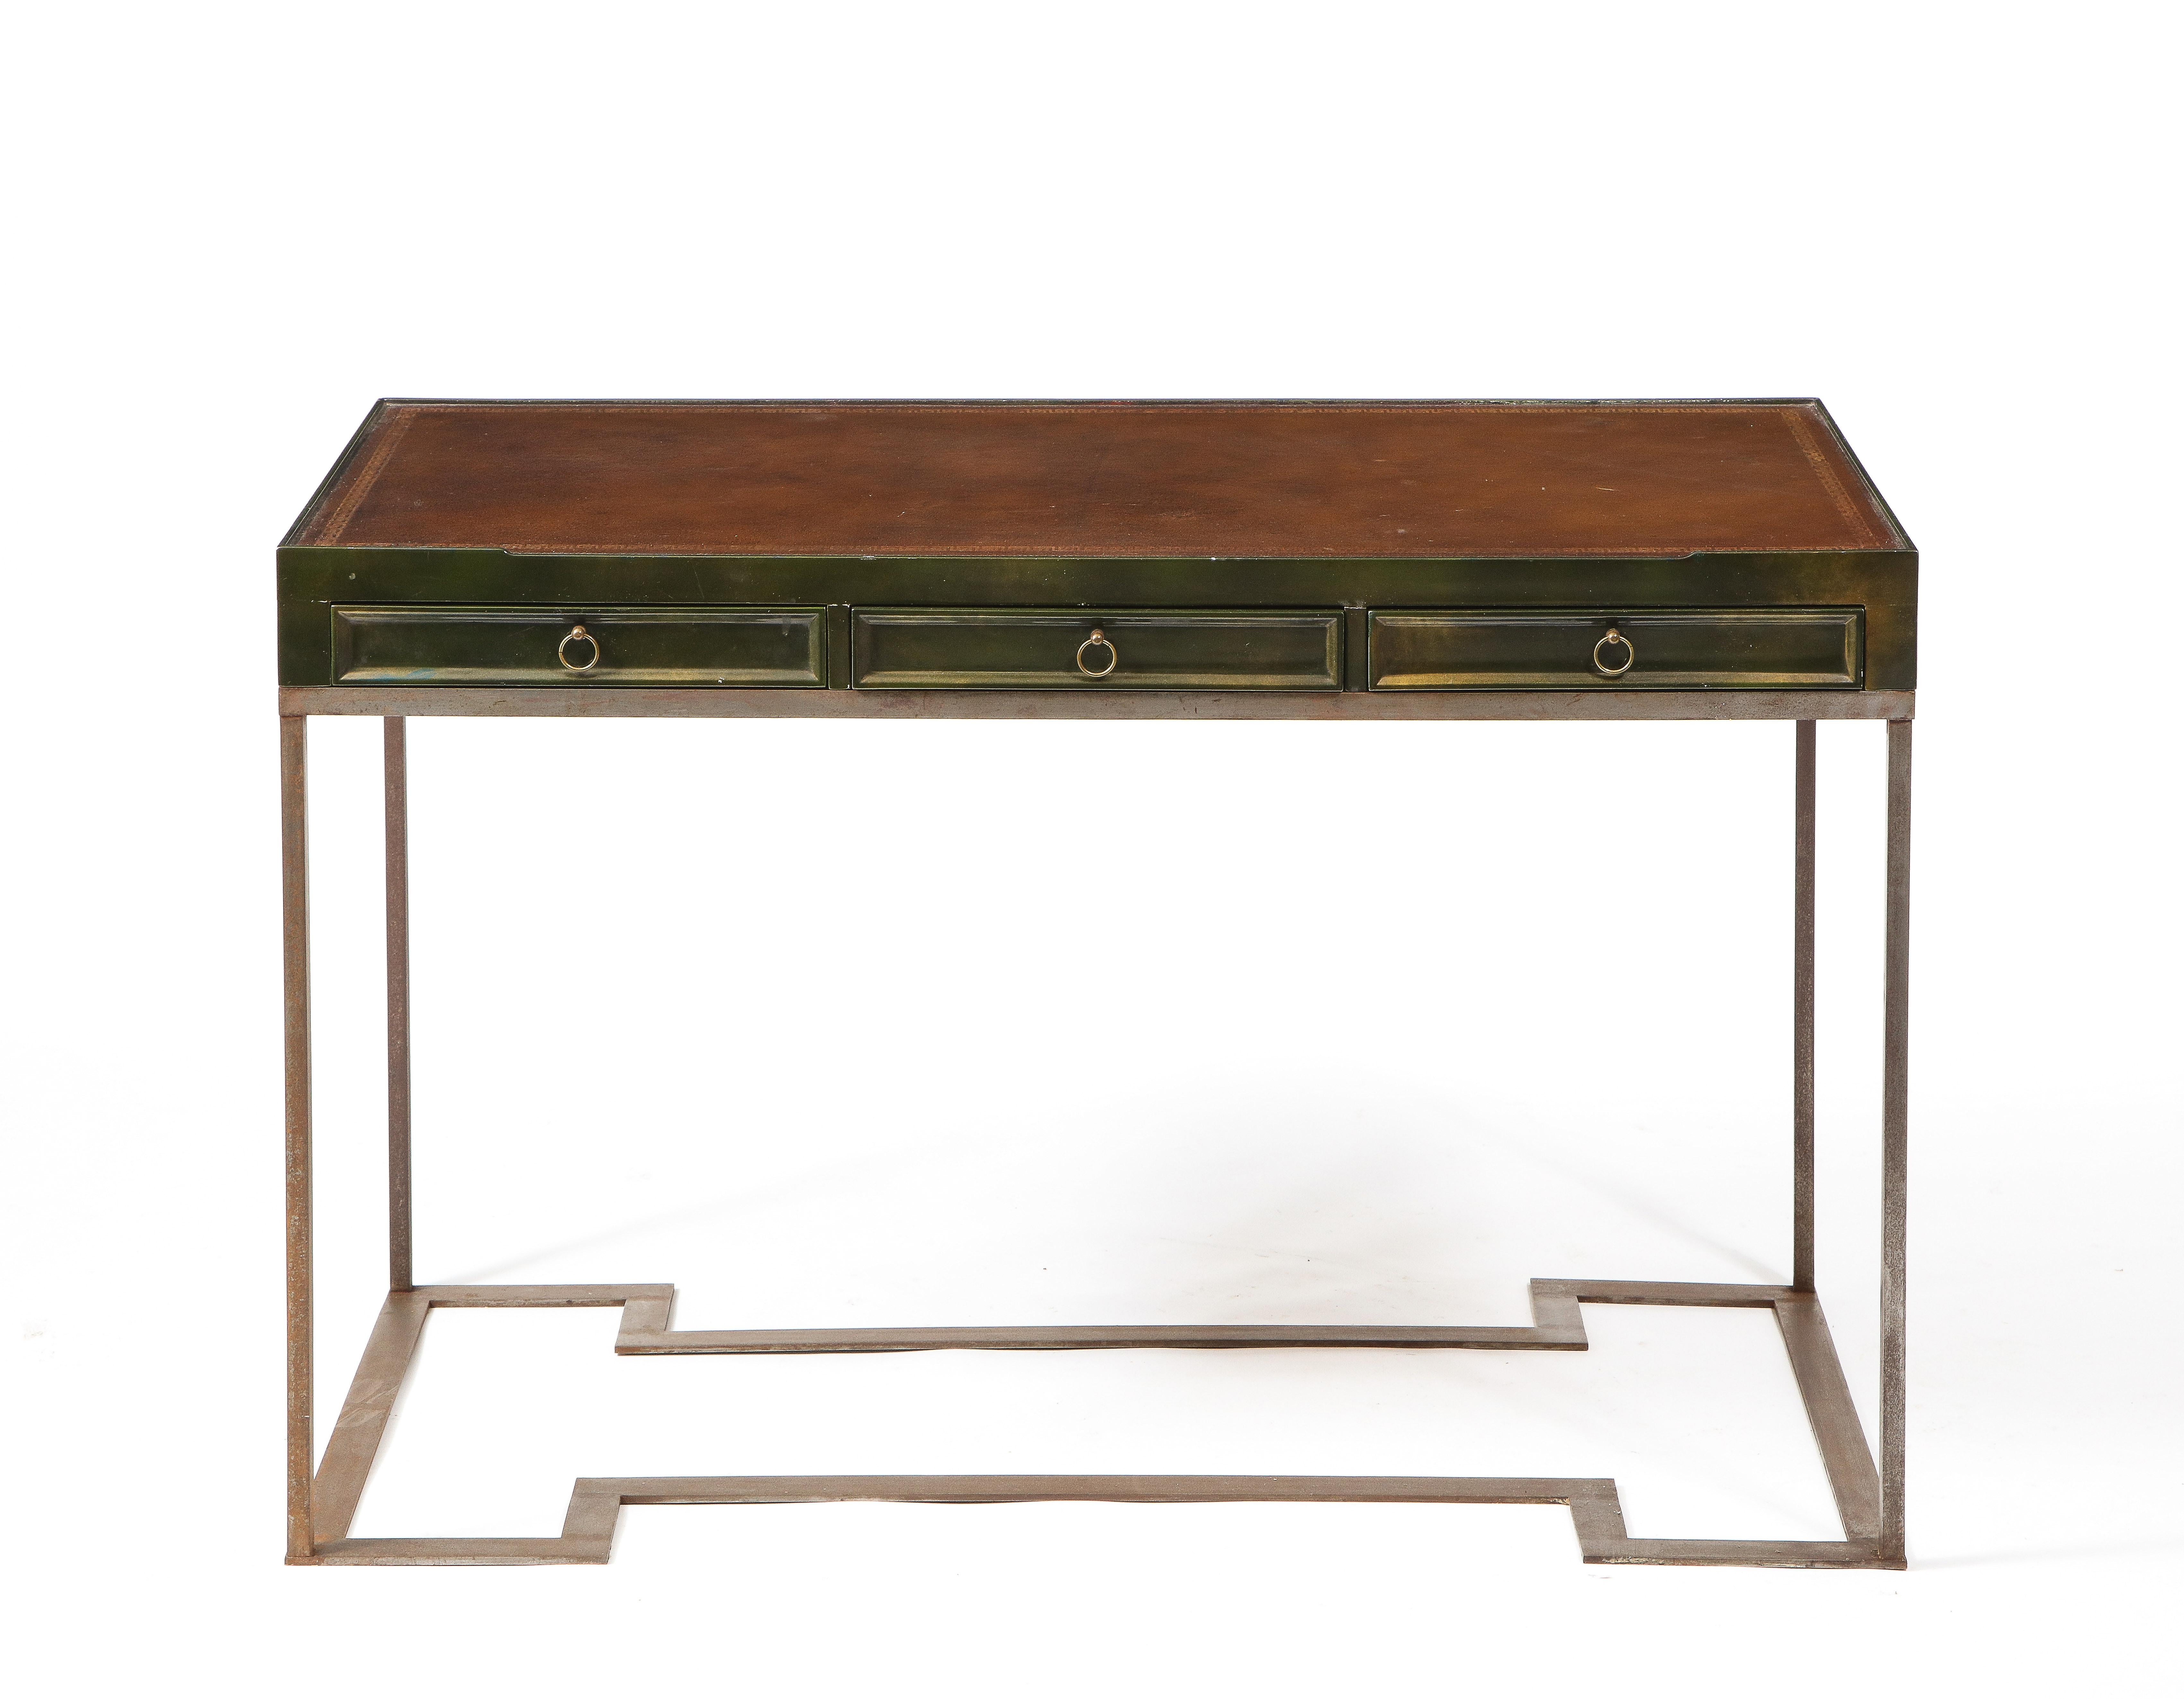 Eleganter Schreibtisch mit zwei Schubladen aus lackierter Eiche und einer Platte aus genarbtem Leder, auf einem massiven Stahlsockel mit quadratischem Querschnitt.